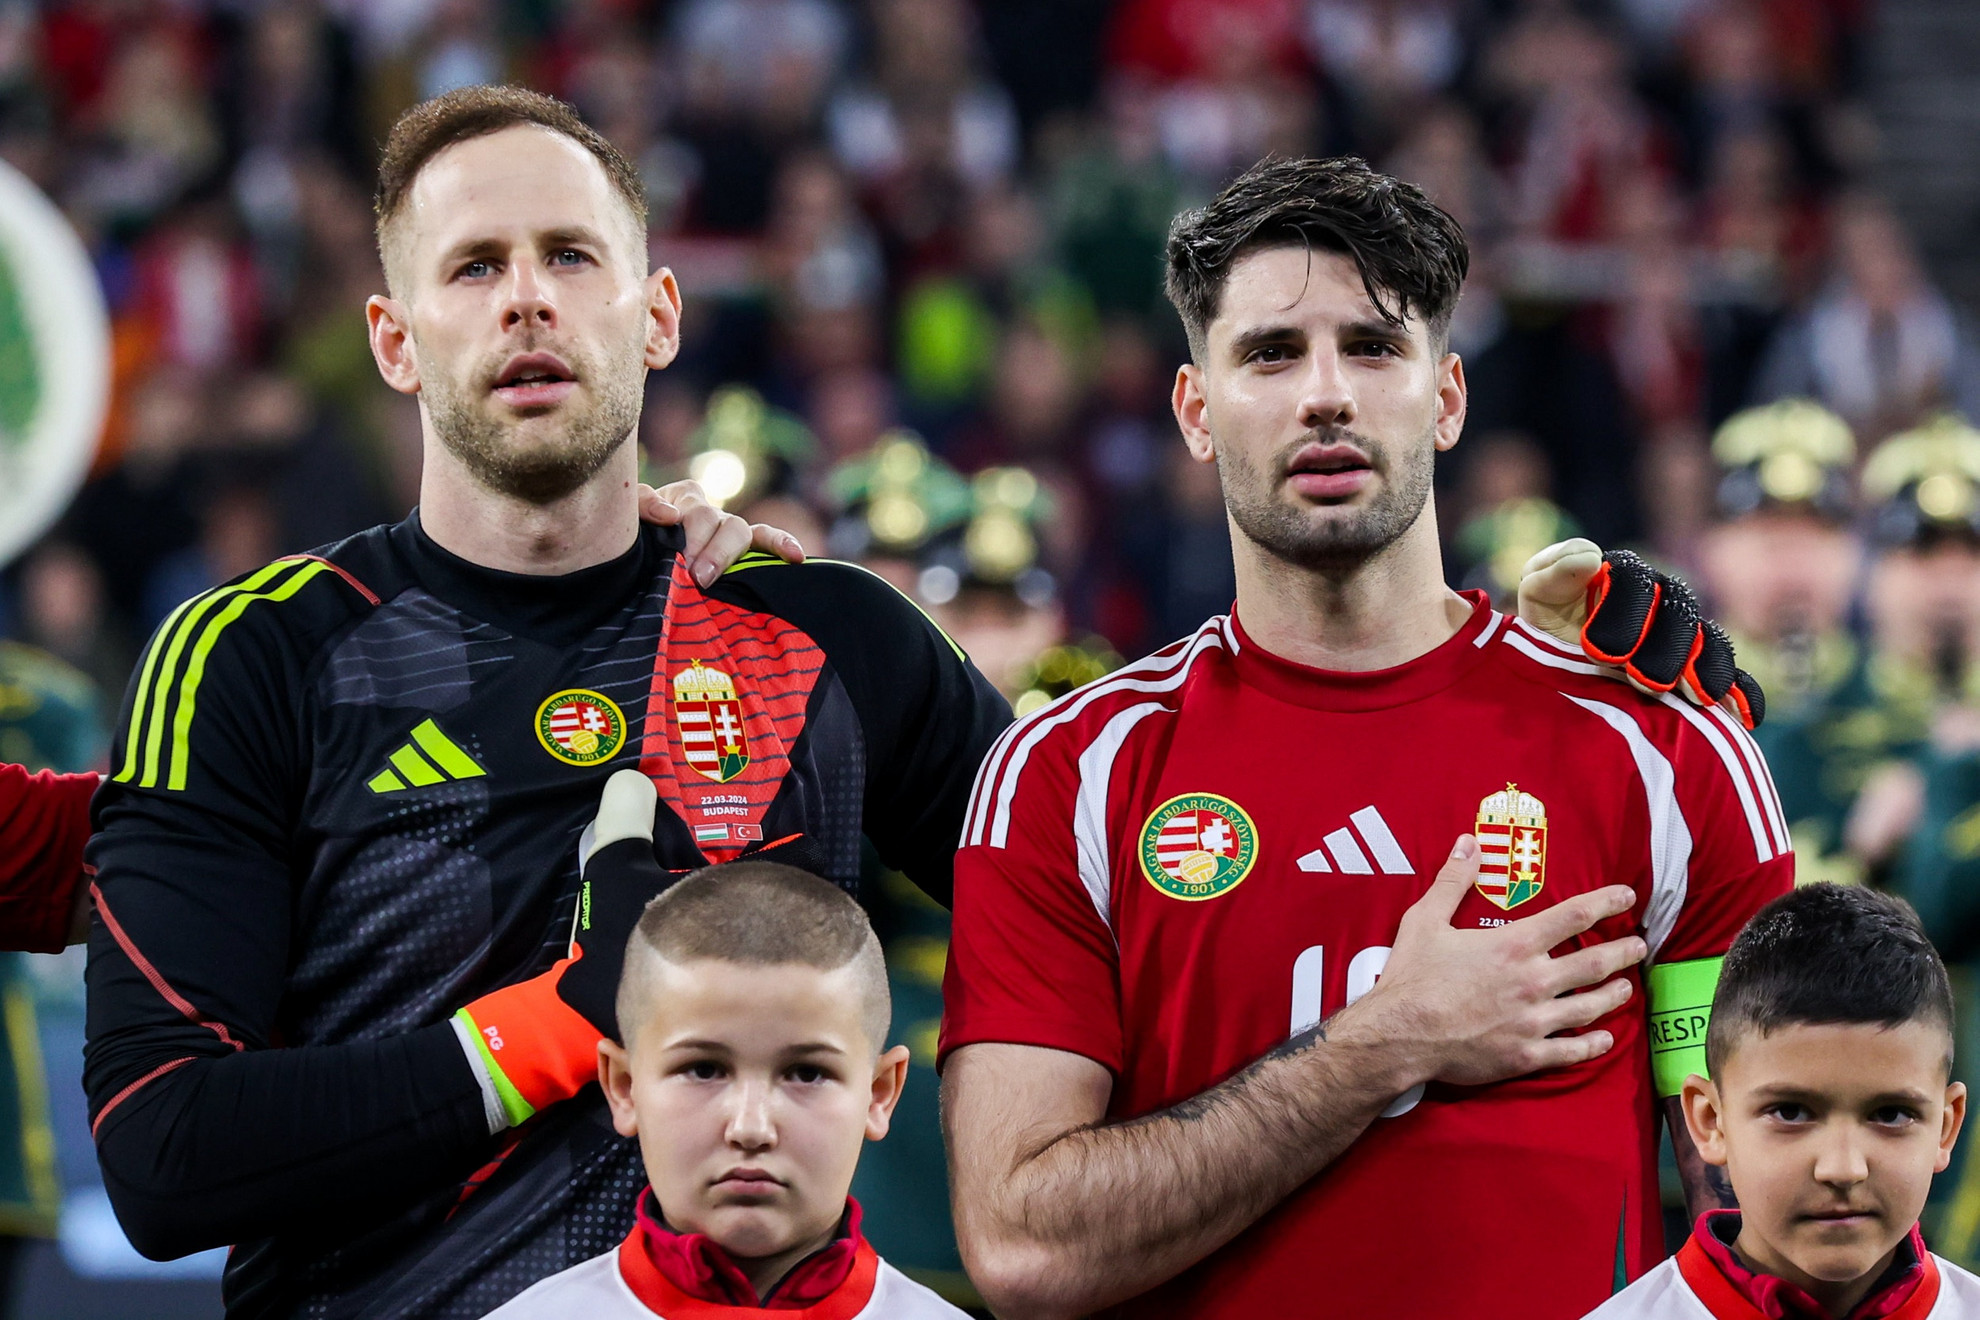 Magyarország-Törökország válogatott felkészülési mérkőzés - Gulácsi Péter és Szoboszlai Dominik